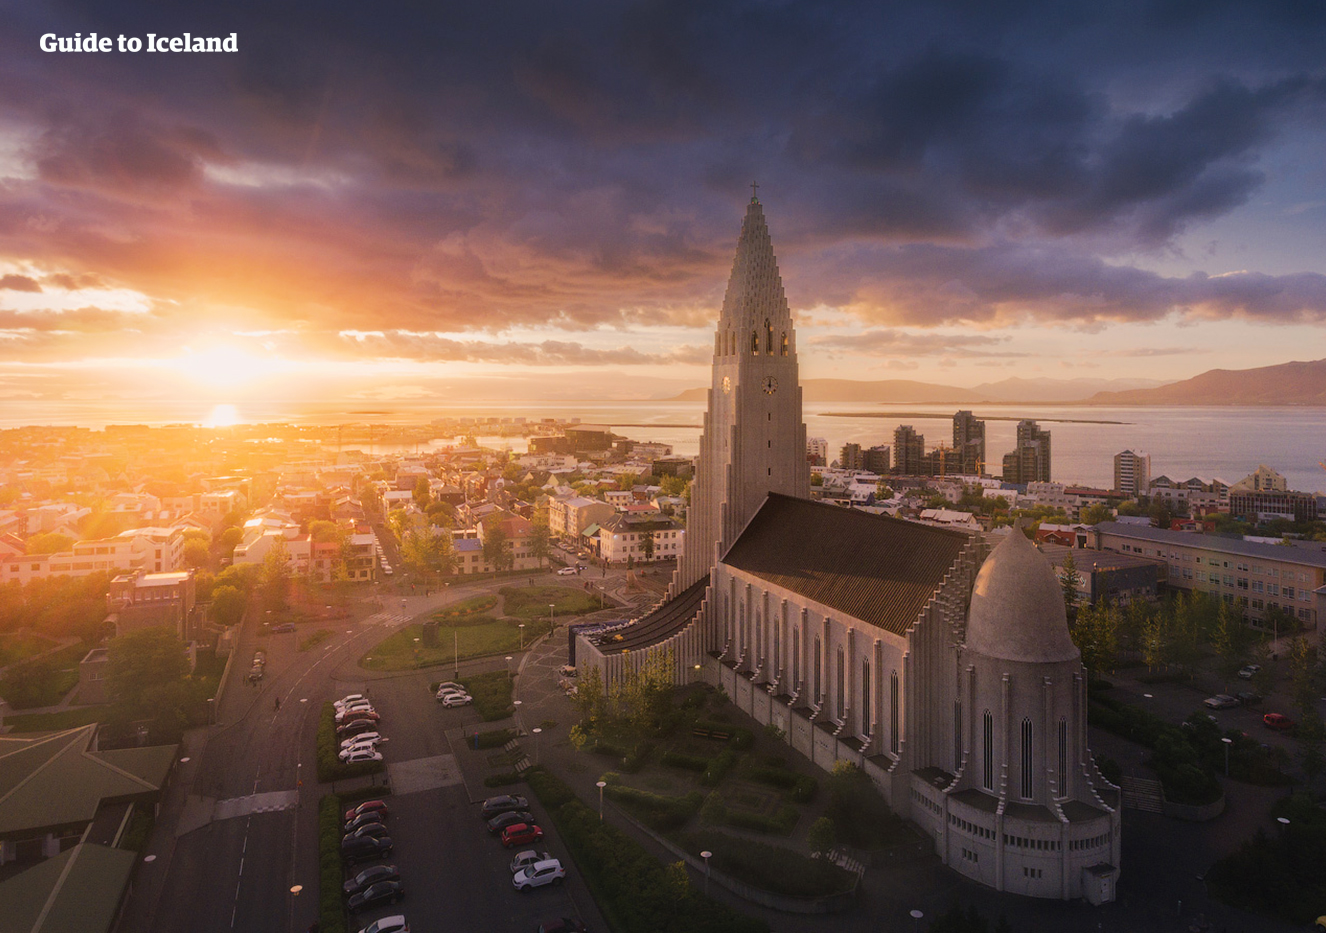 Una notte d'estate a Reykjavík, piena di potenziali meraviglie e avventure.